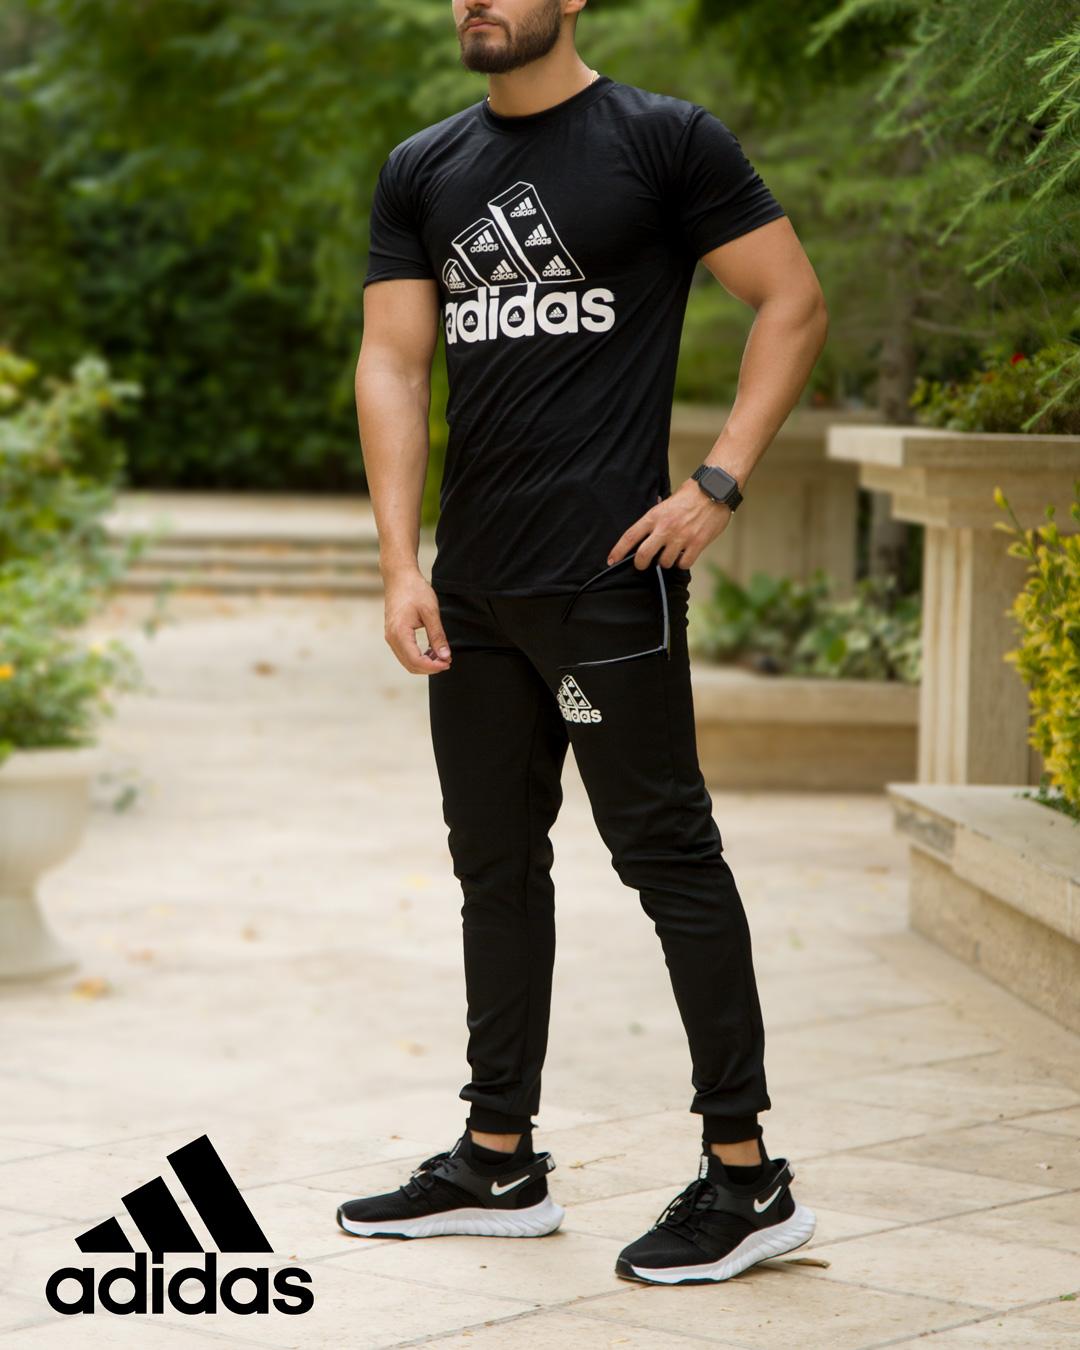 ست تیشرت شلوار مردانه adidas مدل Berkan